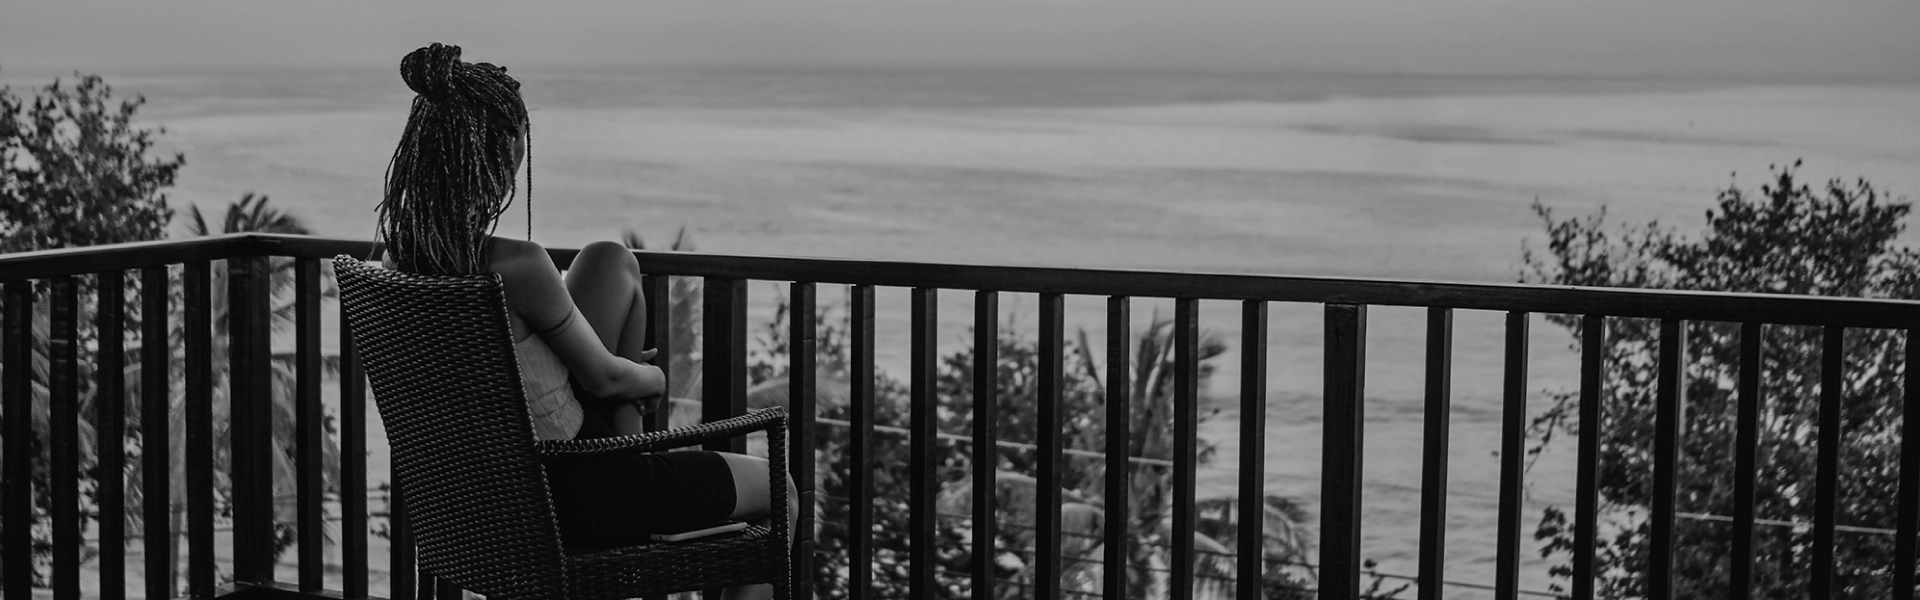 mujer sentada en su silla mirando hacia el mar desde un balcon